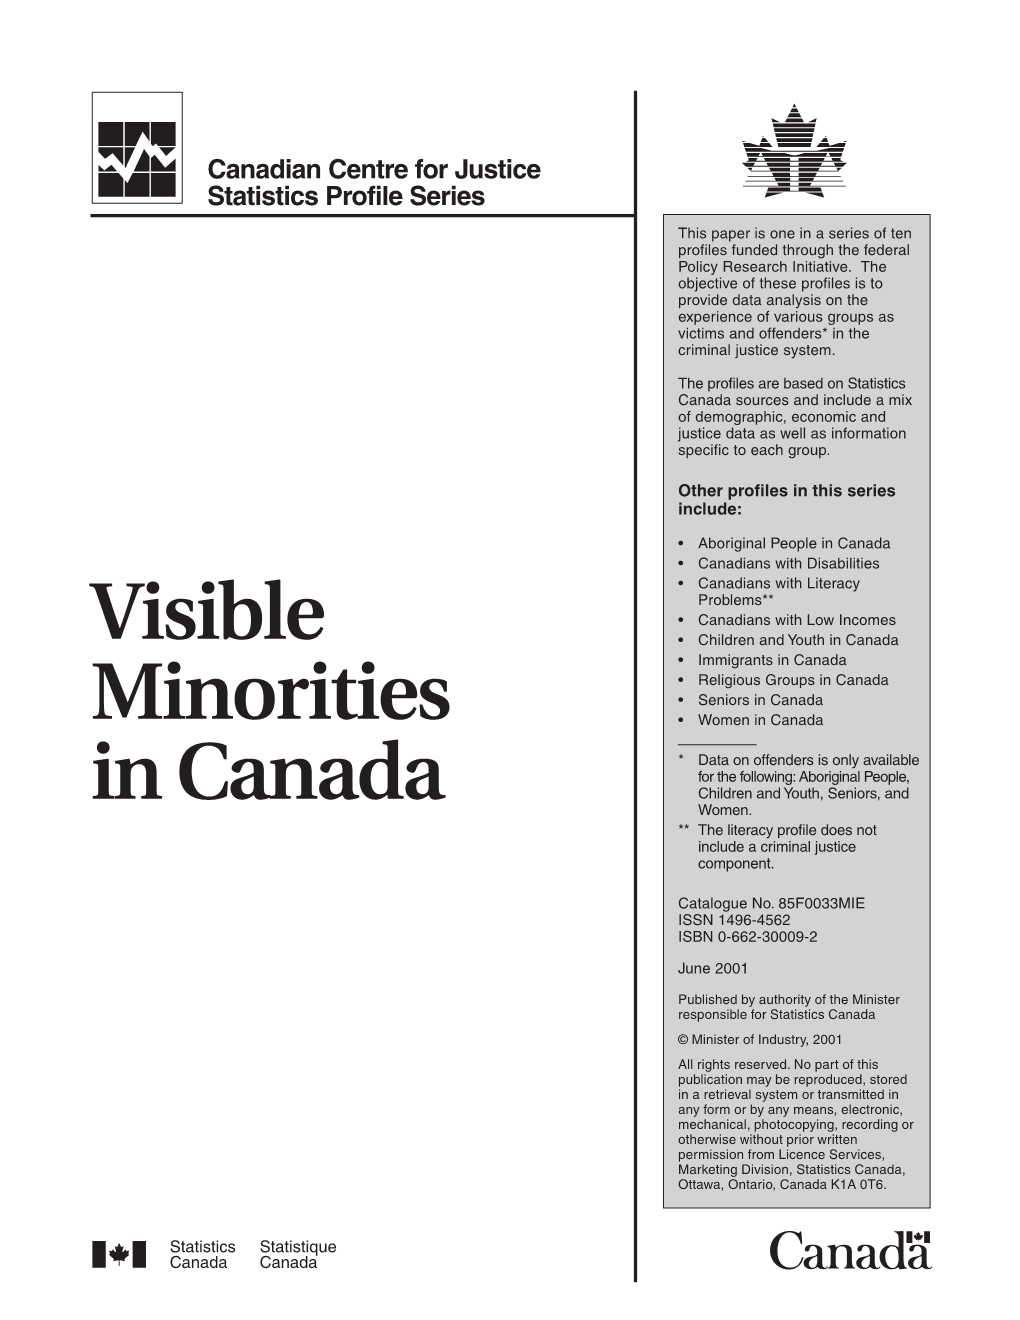 Visible Minorities in Canada